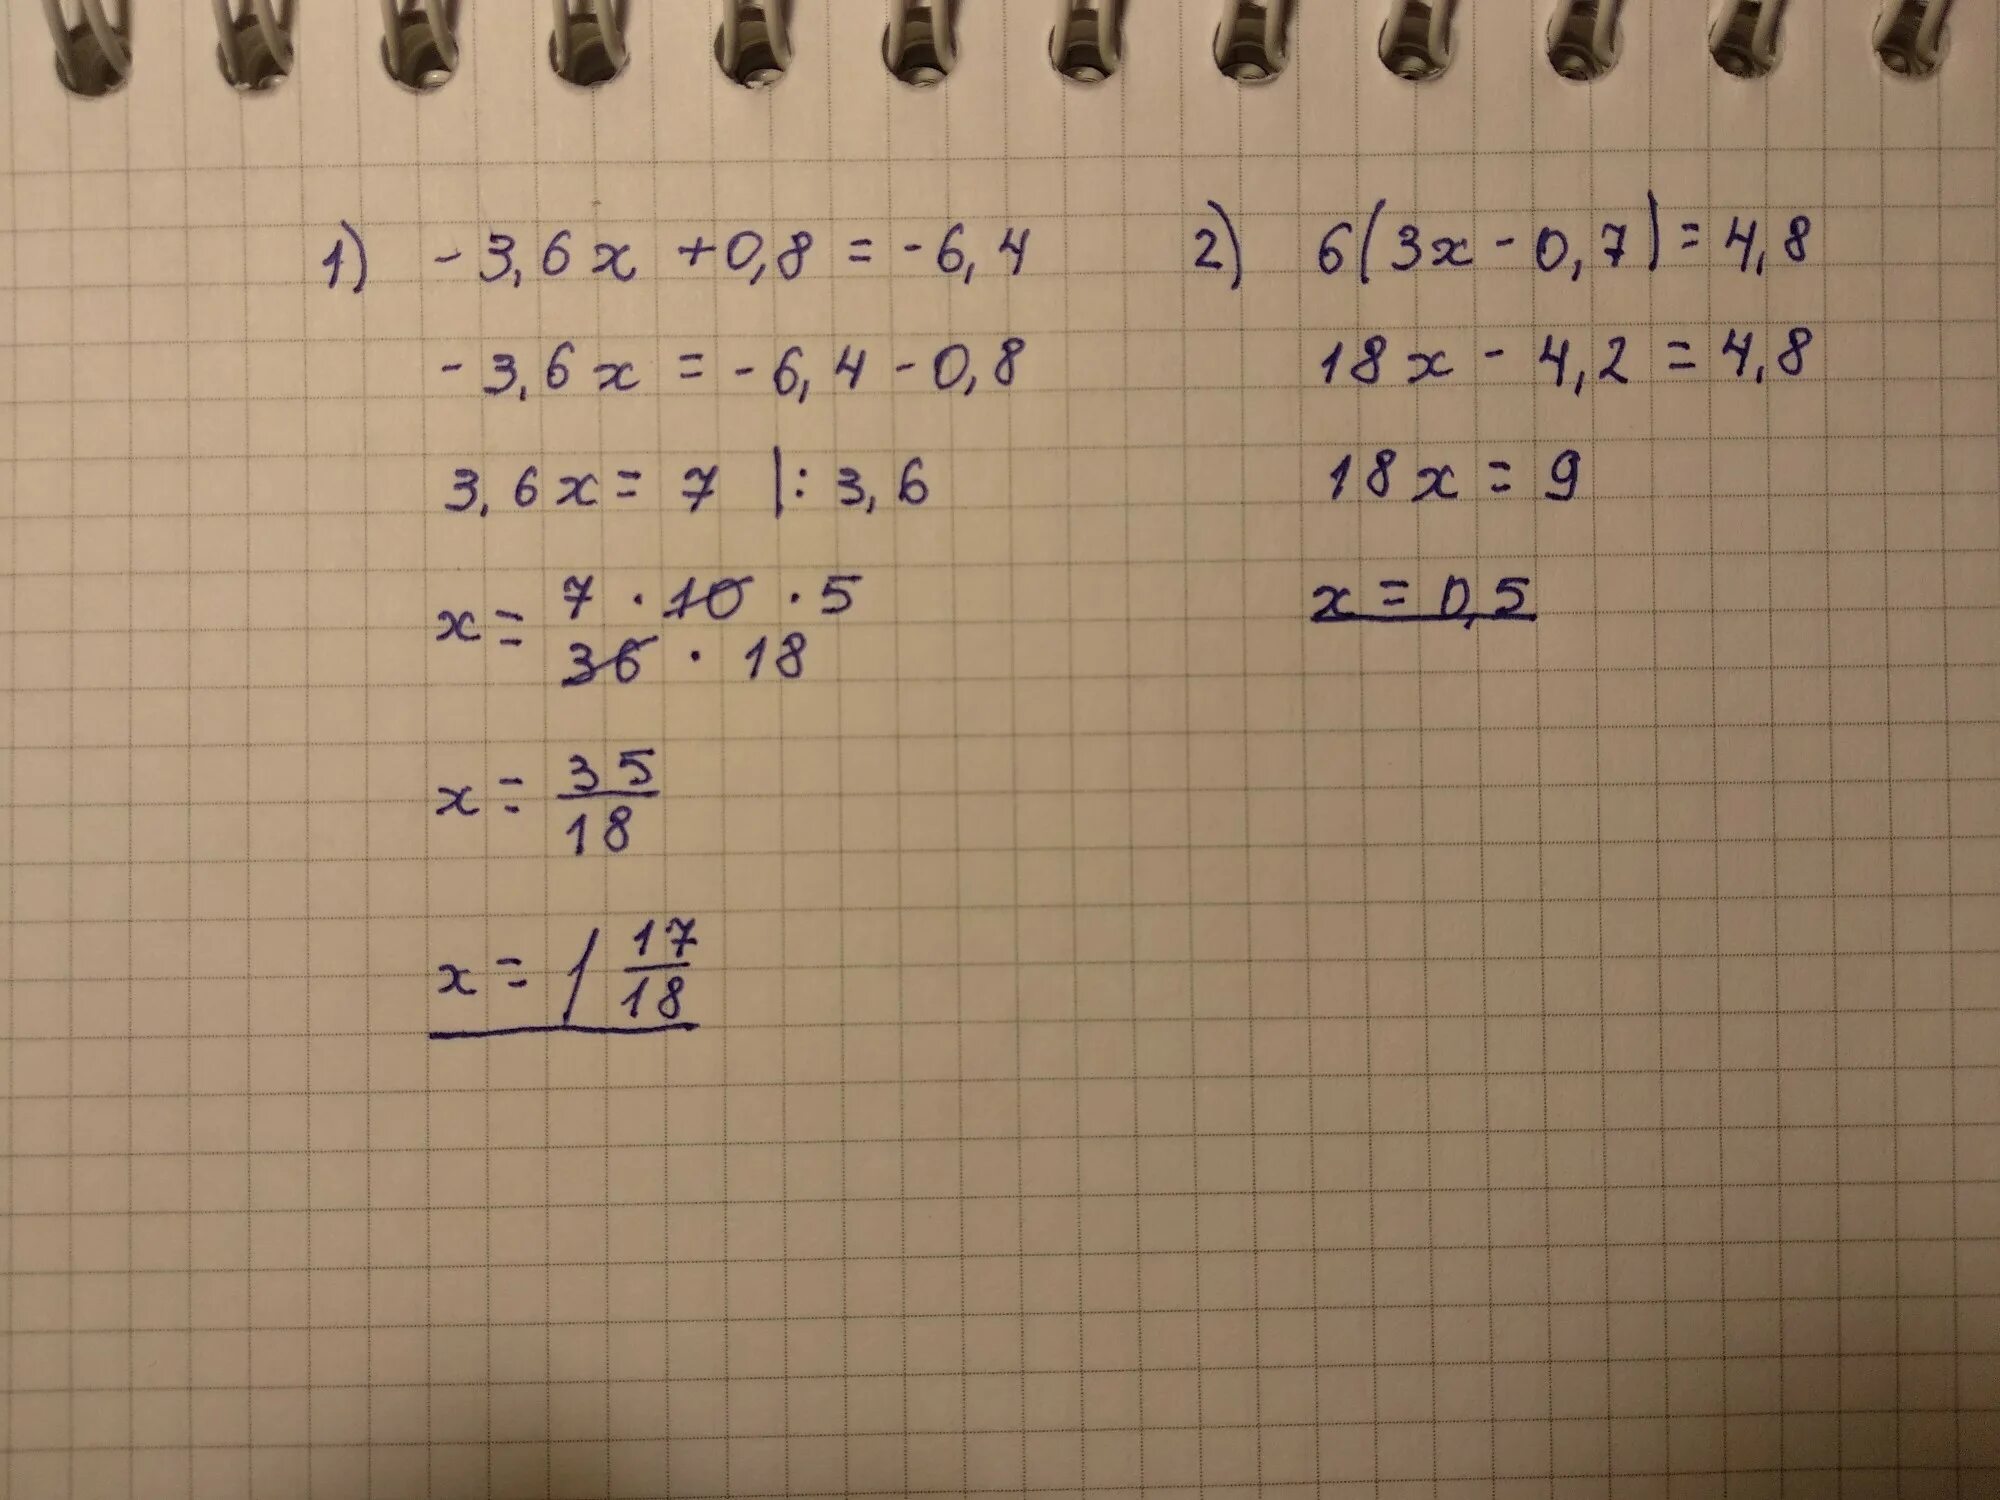 4х 5 8 2х 3. {8-Х>4 4+6х<1. (Х + 3)(2х – 6)(3х + 4) ≥ 0.. 3х - 6 = 0. 2.6Х3.0Х1.8.